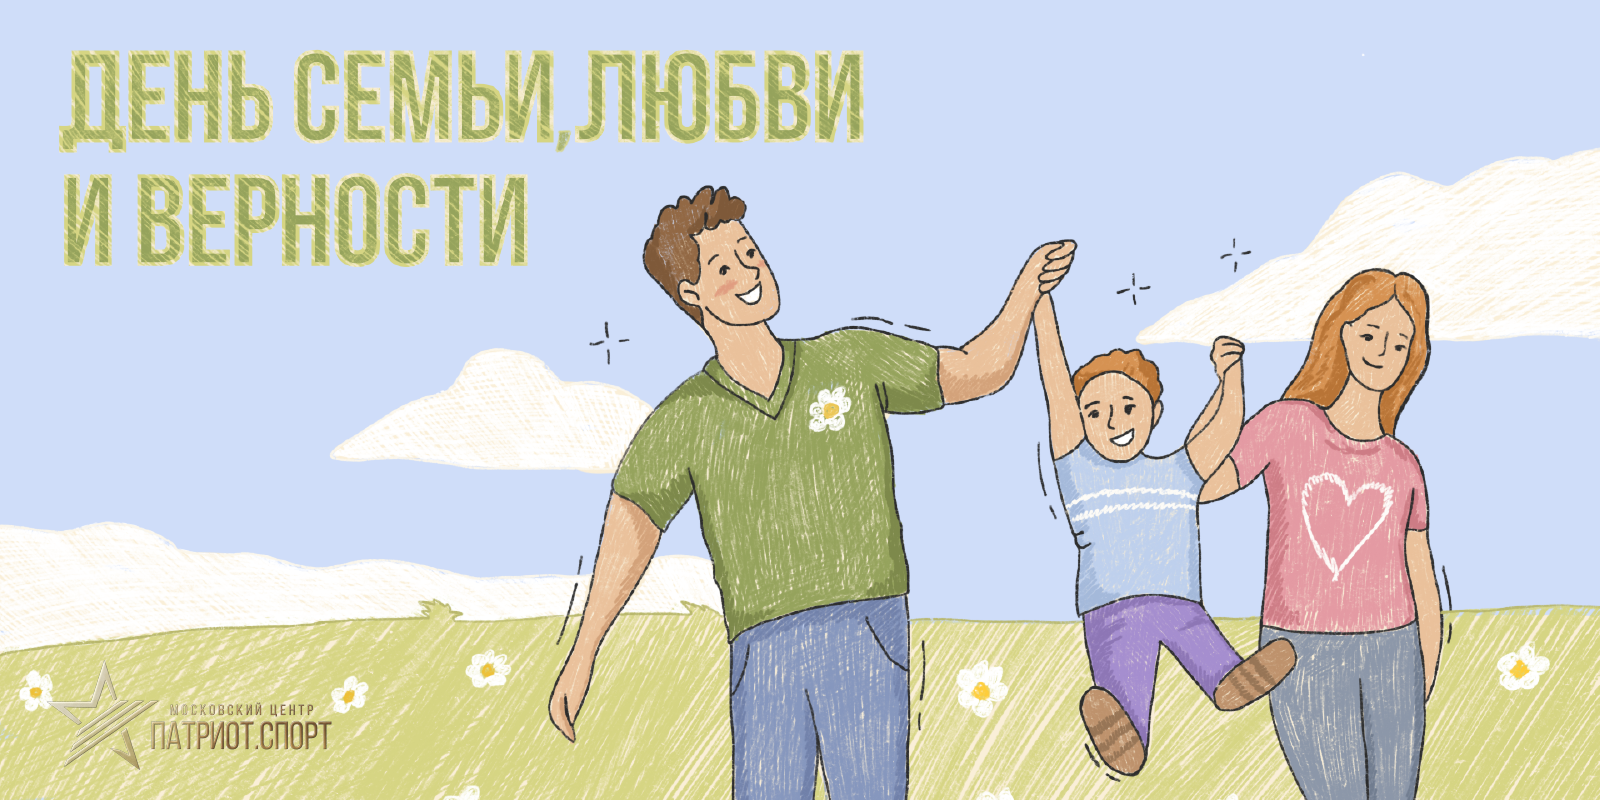 Московский центр «Патриот.Спорт» поздравляет с Днем семьи, любви и верности